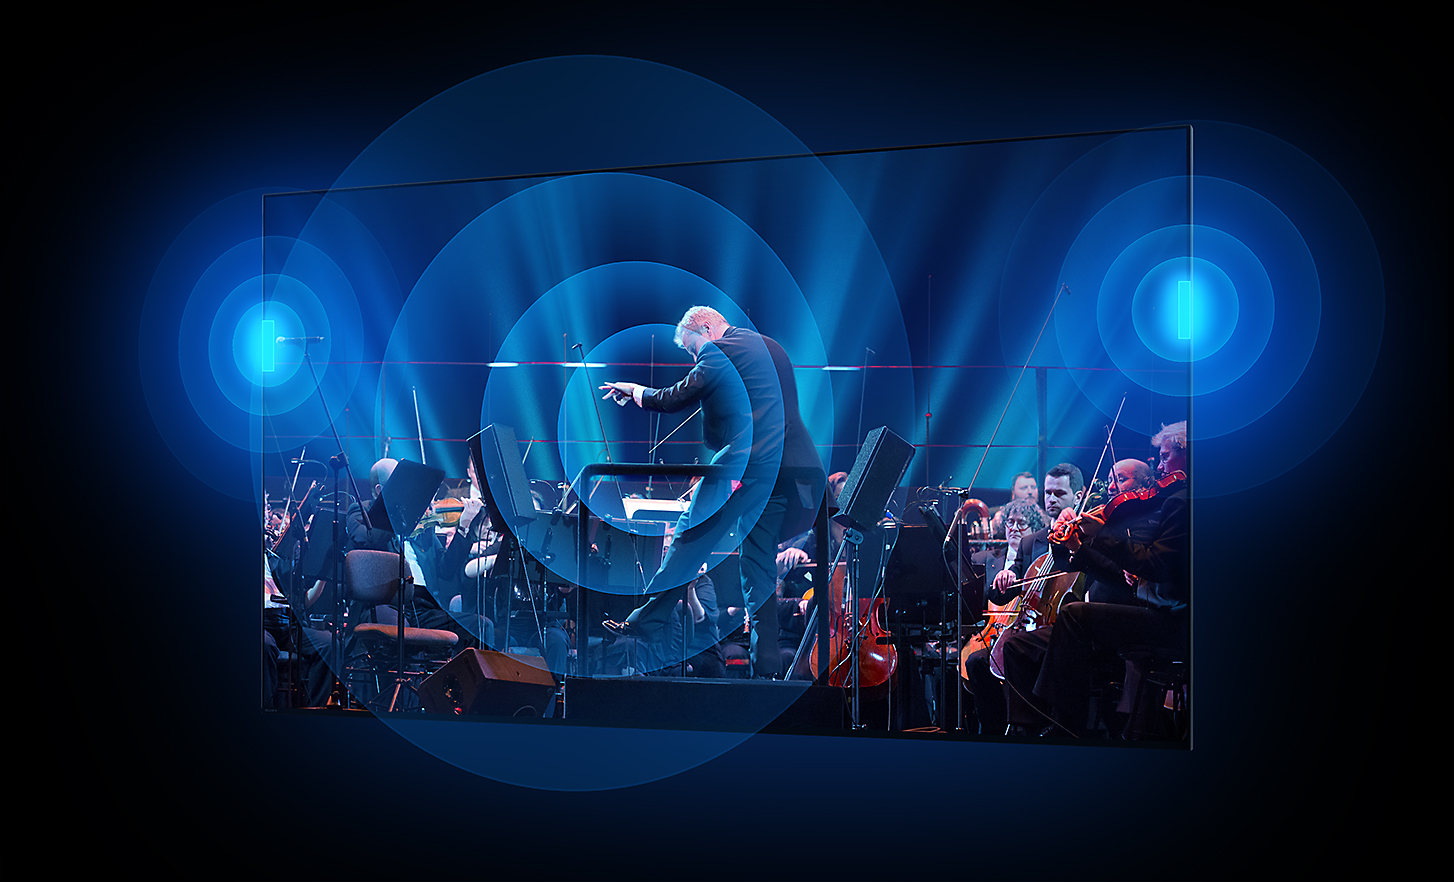 Zaslon BRAVIA TV-a pokazuje dirigenta i orkestar sa zvučnim valovima koji se u koncentričnim krugovima šire iz središta zaslona